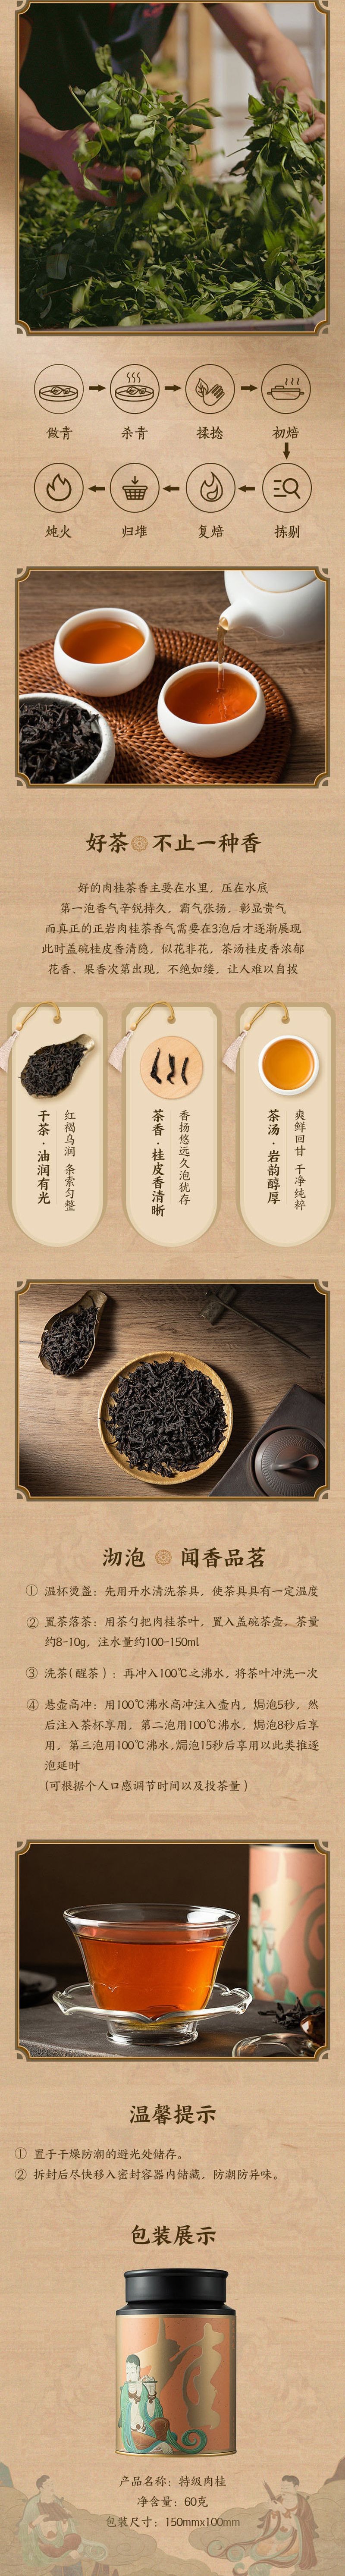 【中国直邮】网易严选 武夷正岩特级肉桂 茶叶 60克